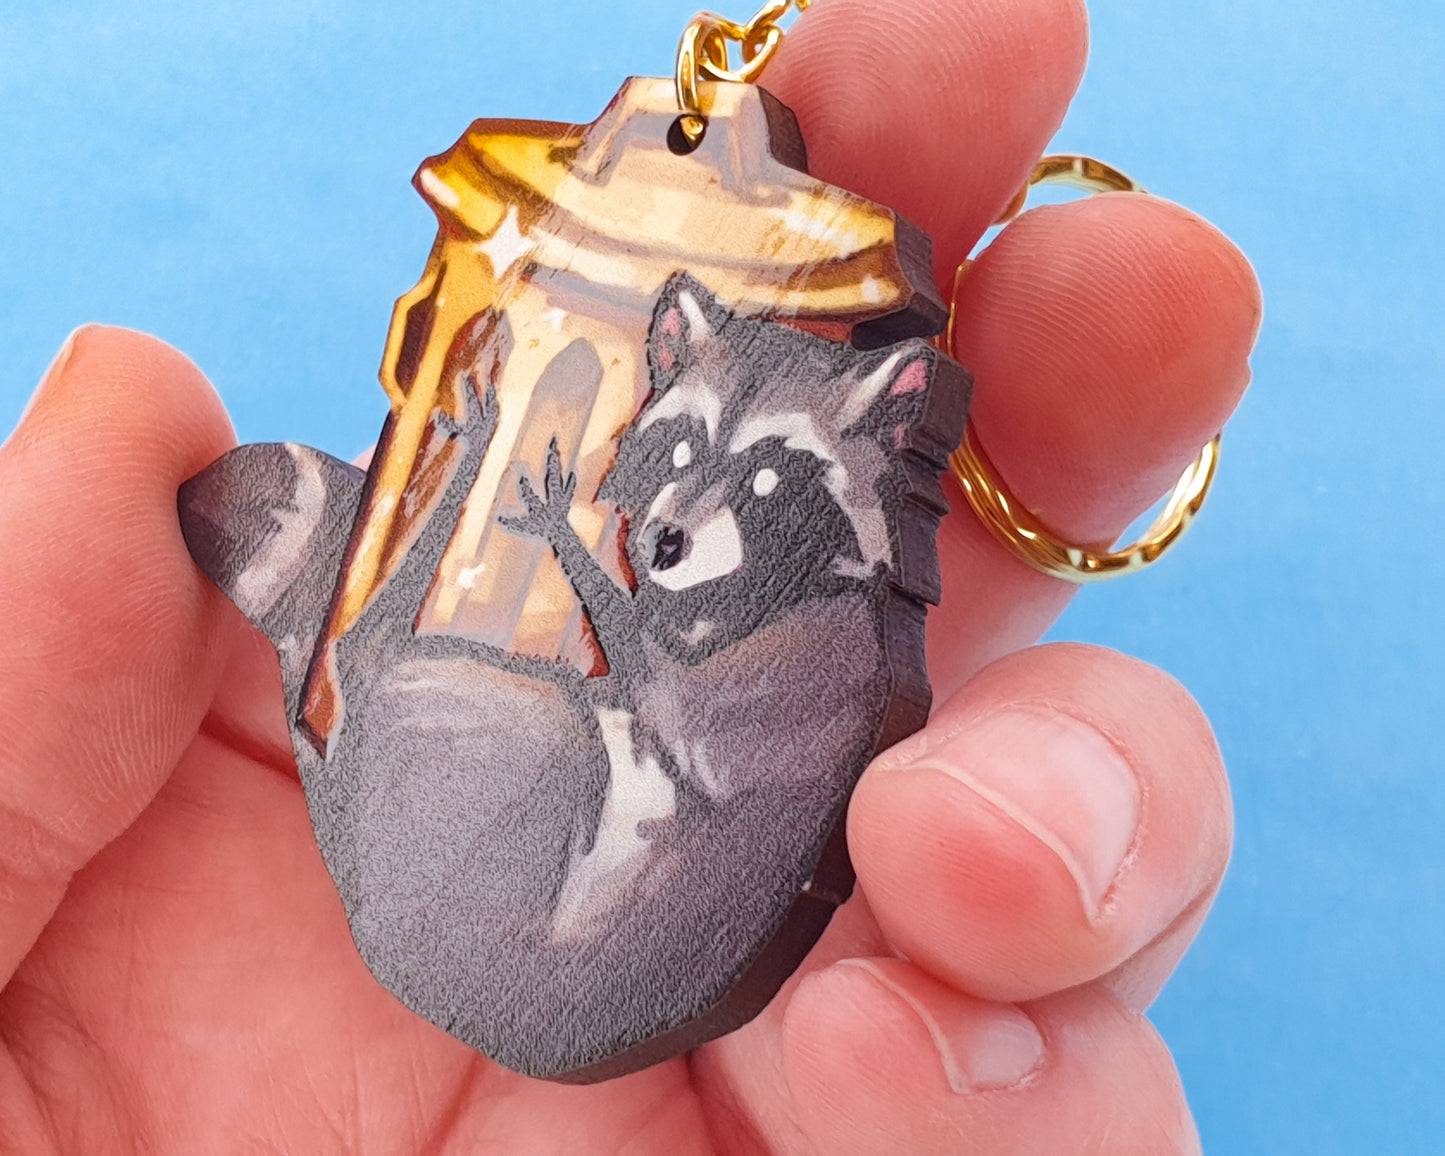 Wooden Raccoon in Gold Trashcan Keychain